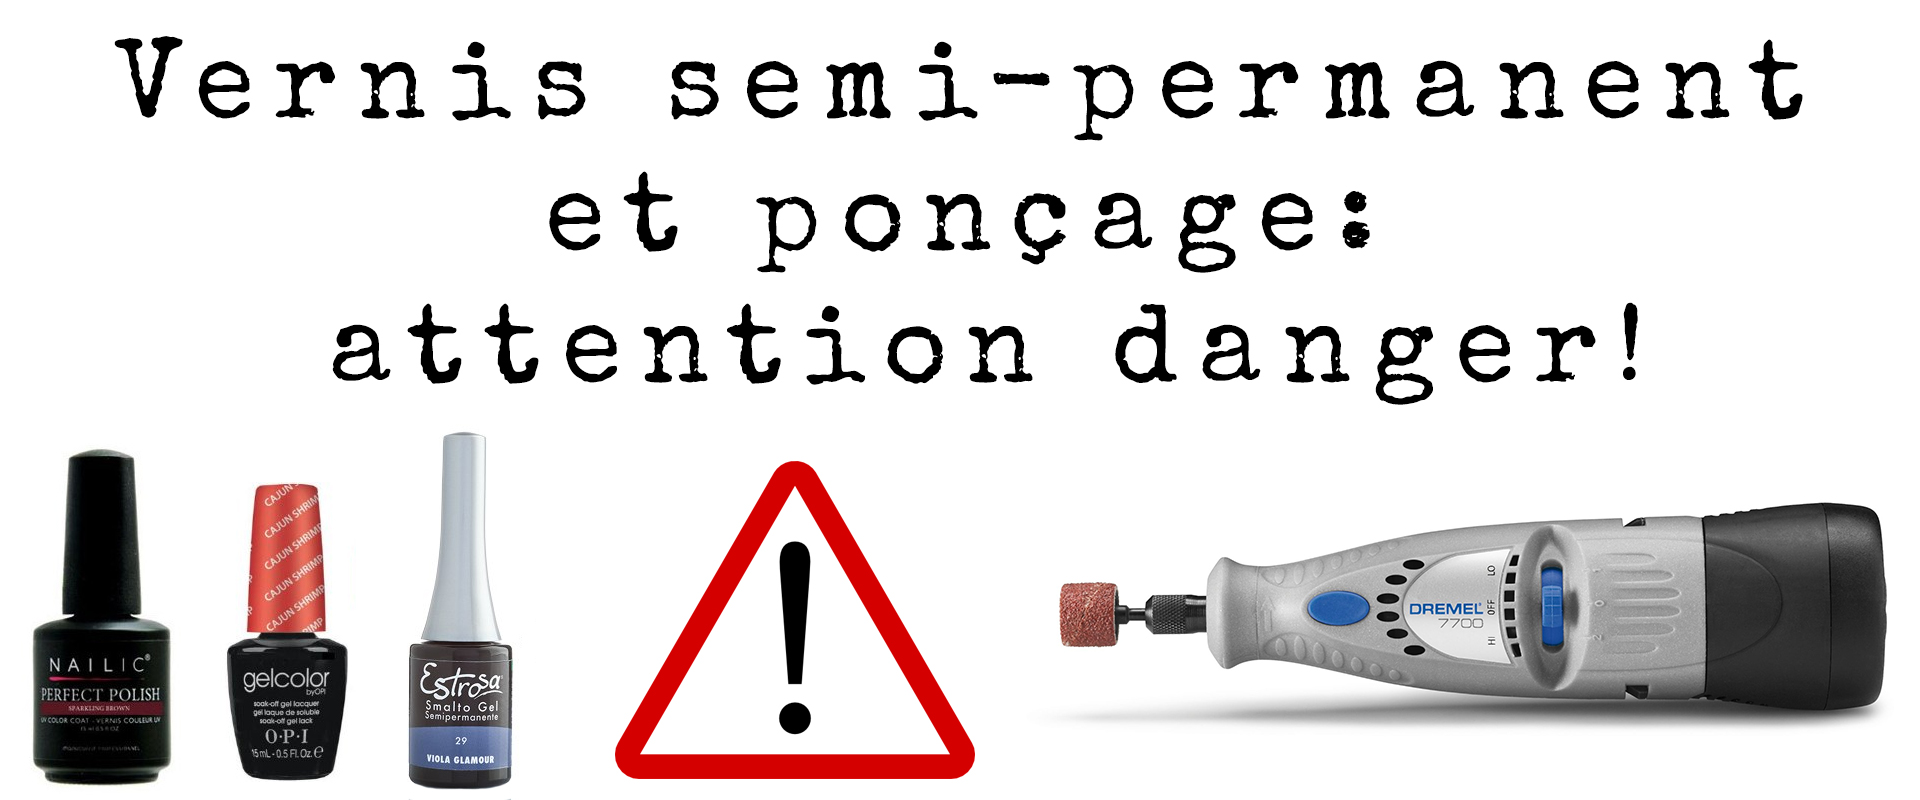 Vernis semi-permanent et poncage: attention danger!